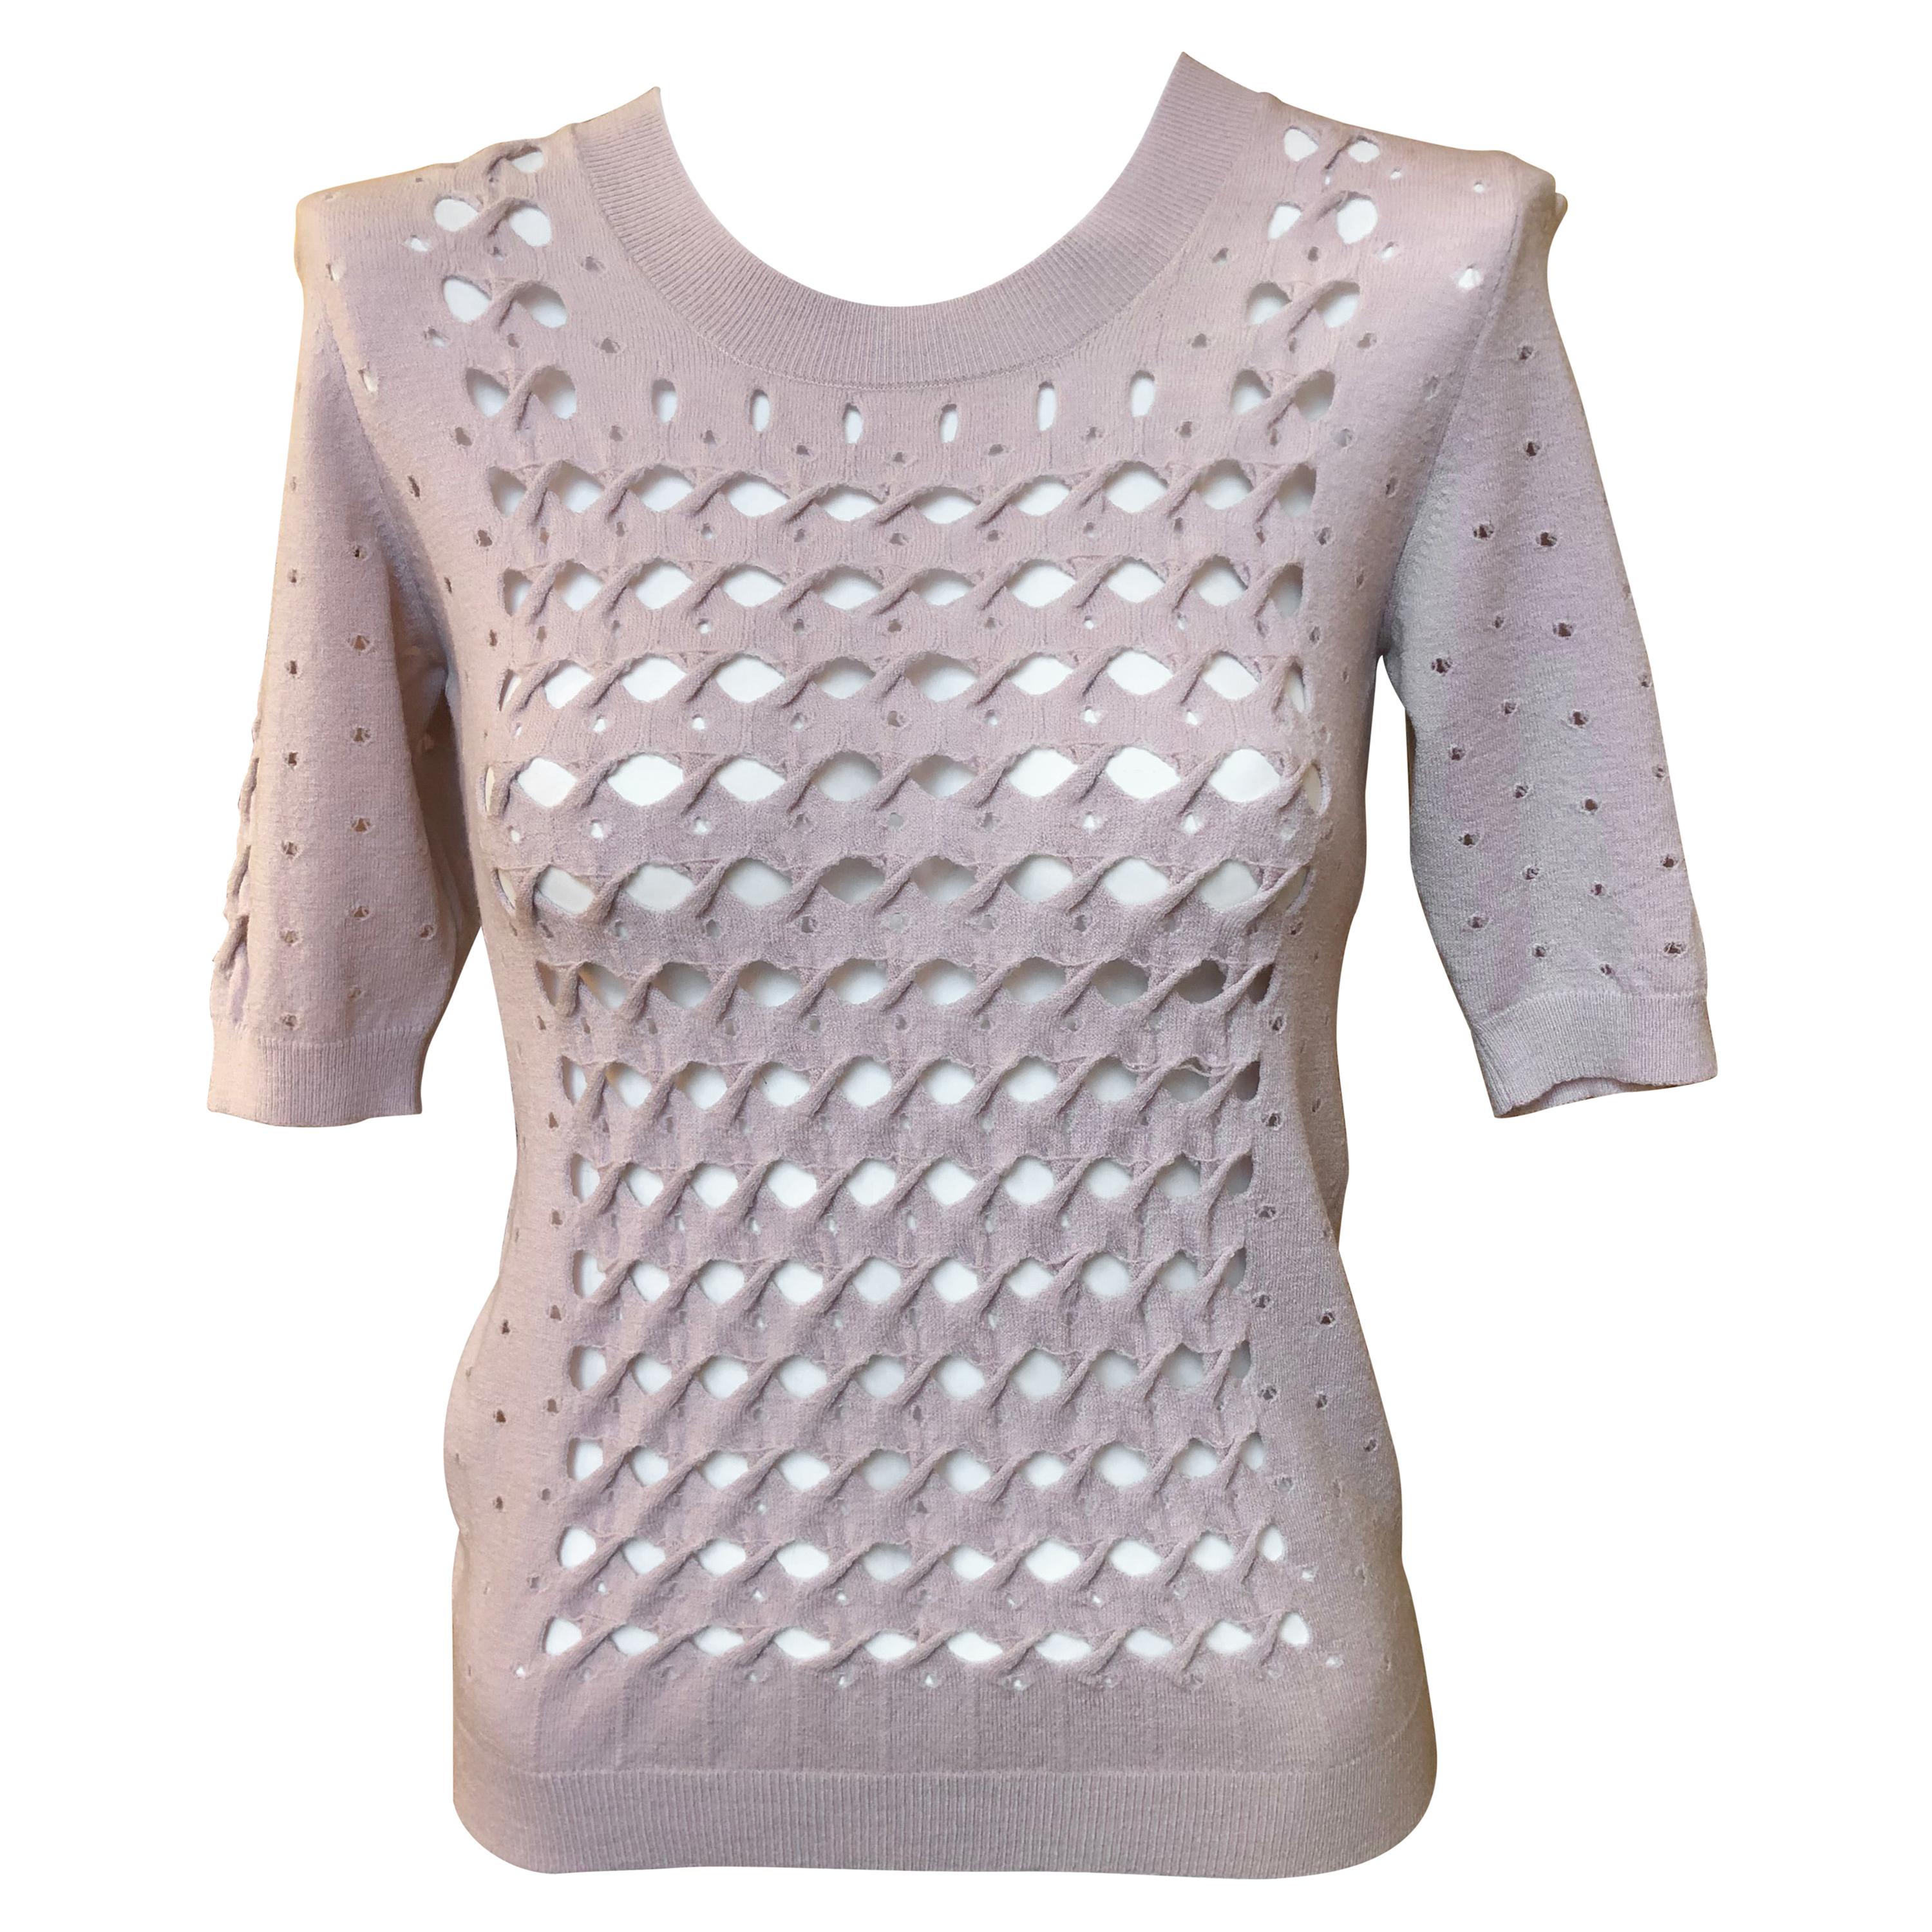 2014 Nina Ricci Pale Lilac Lace Knit Sweater 